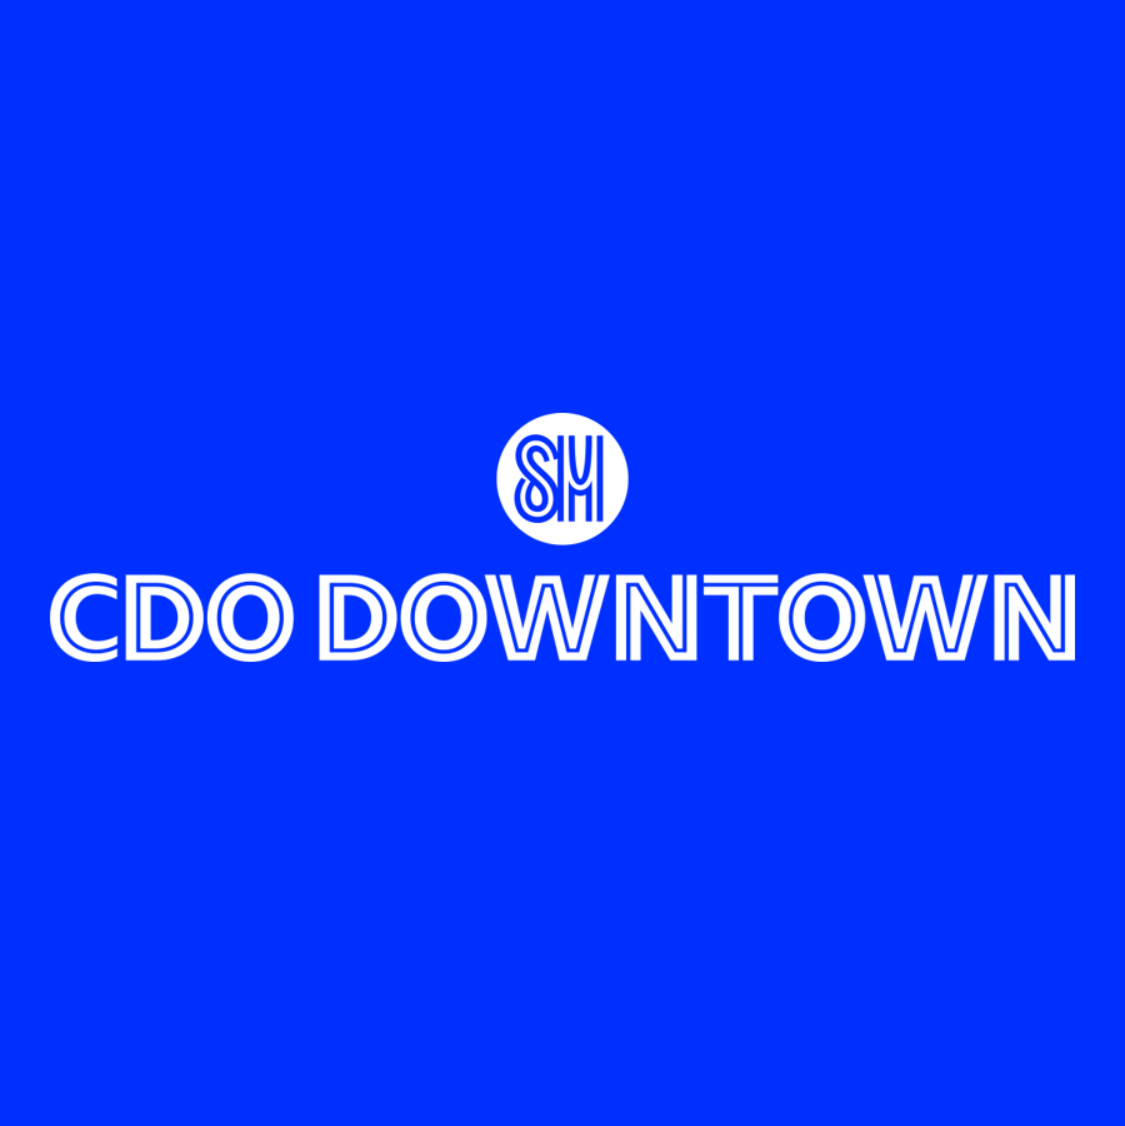 SM CDO Downtown Premier